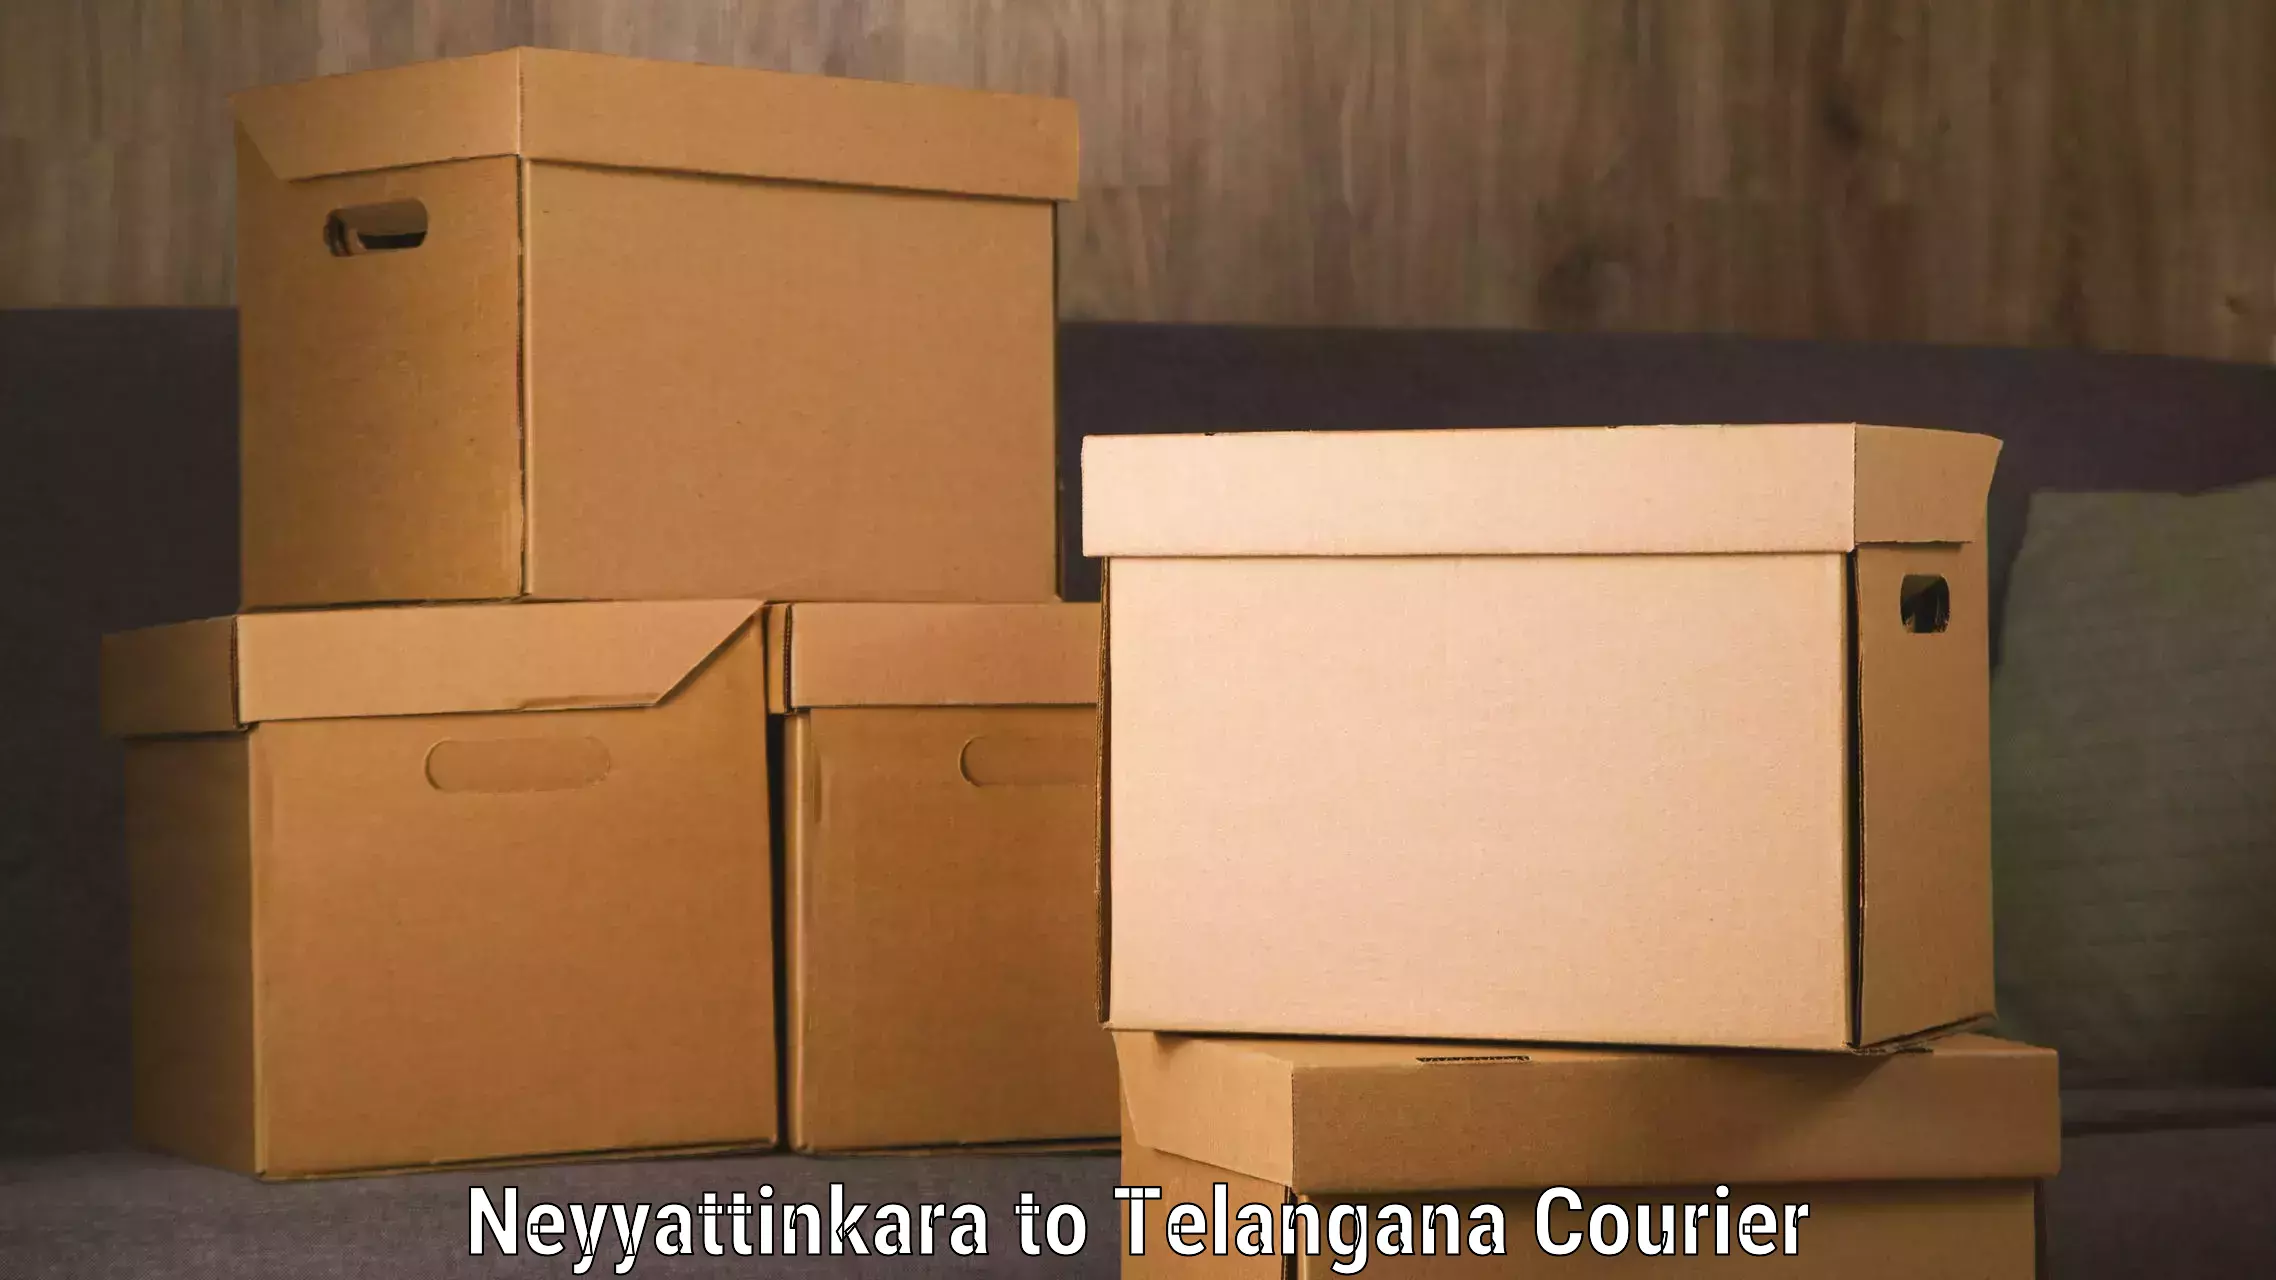 Global shipping networks Neyyattinkara to Achampet